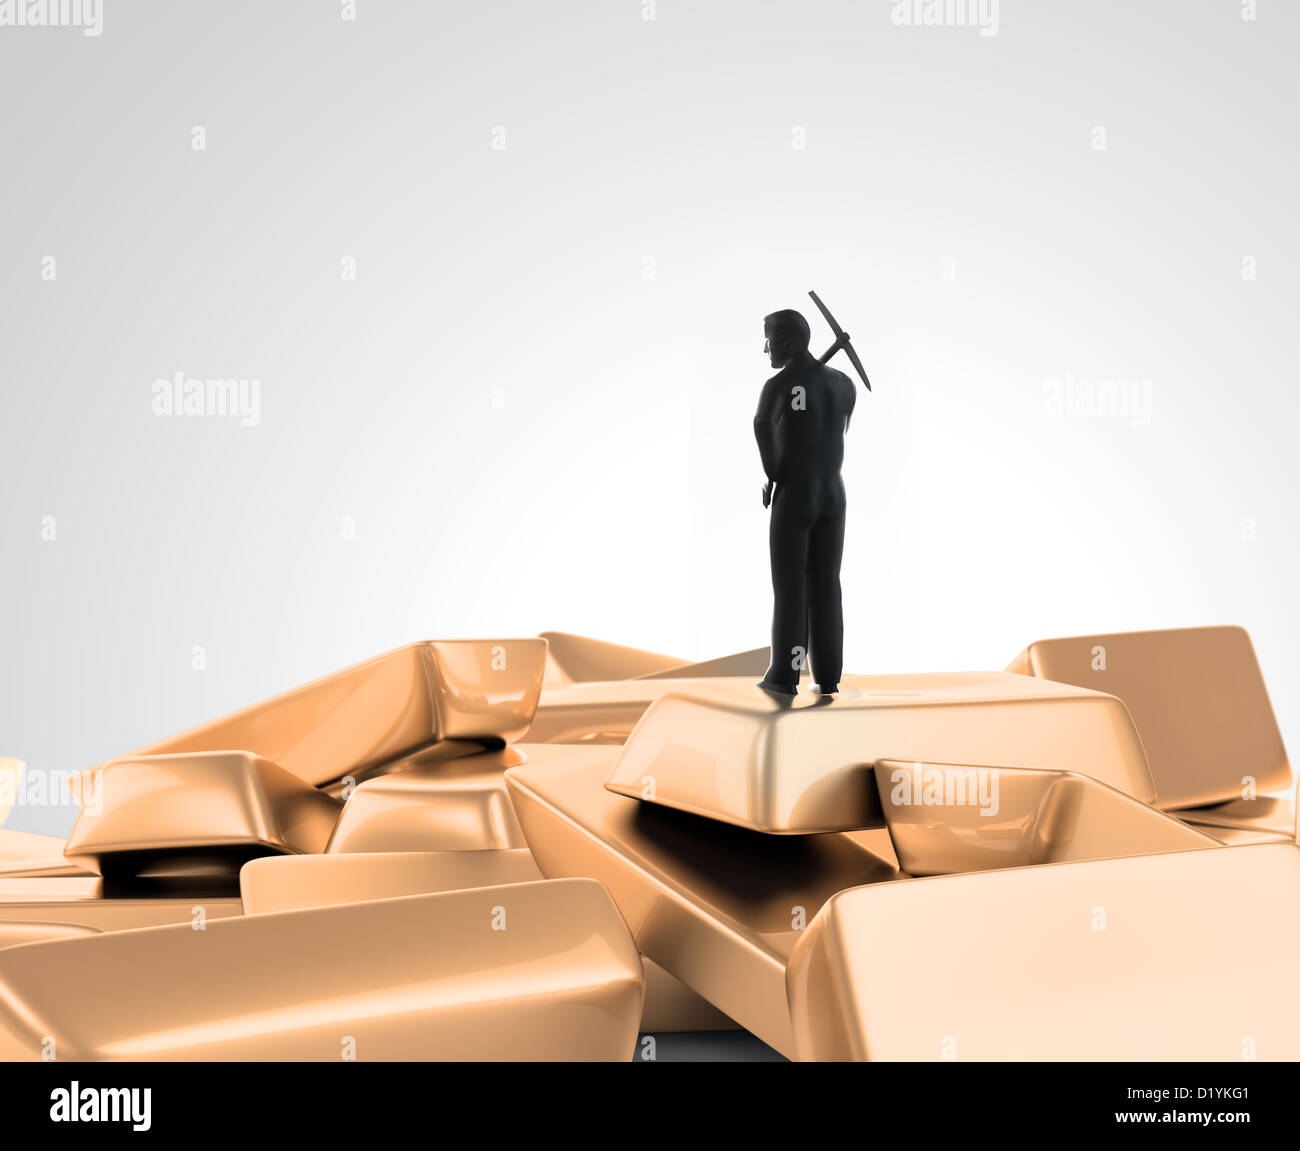 Eine winzige Figur stehend mit einer Spitzhacke auf einen Haufen von Goldbarren Stockfoto